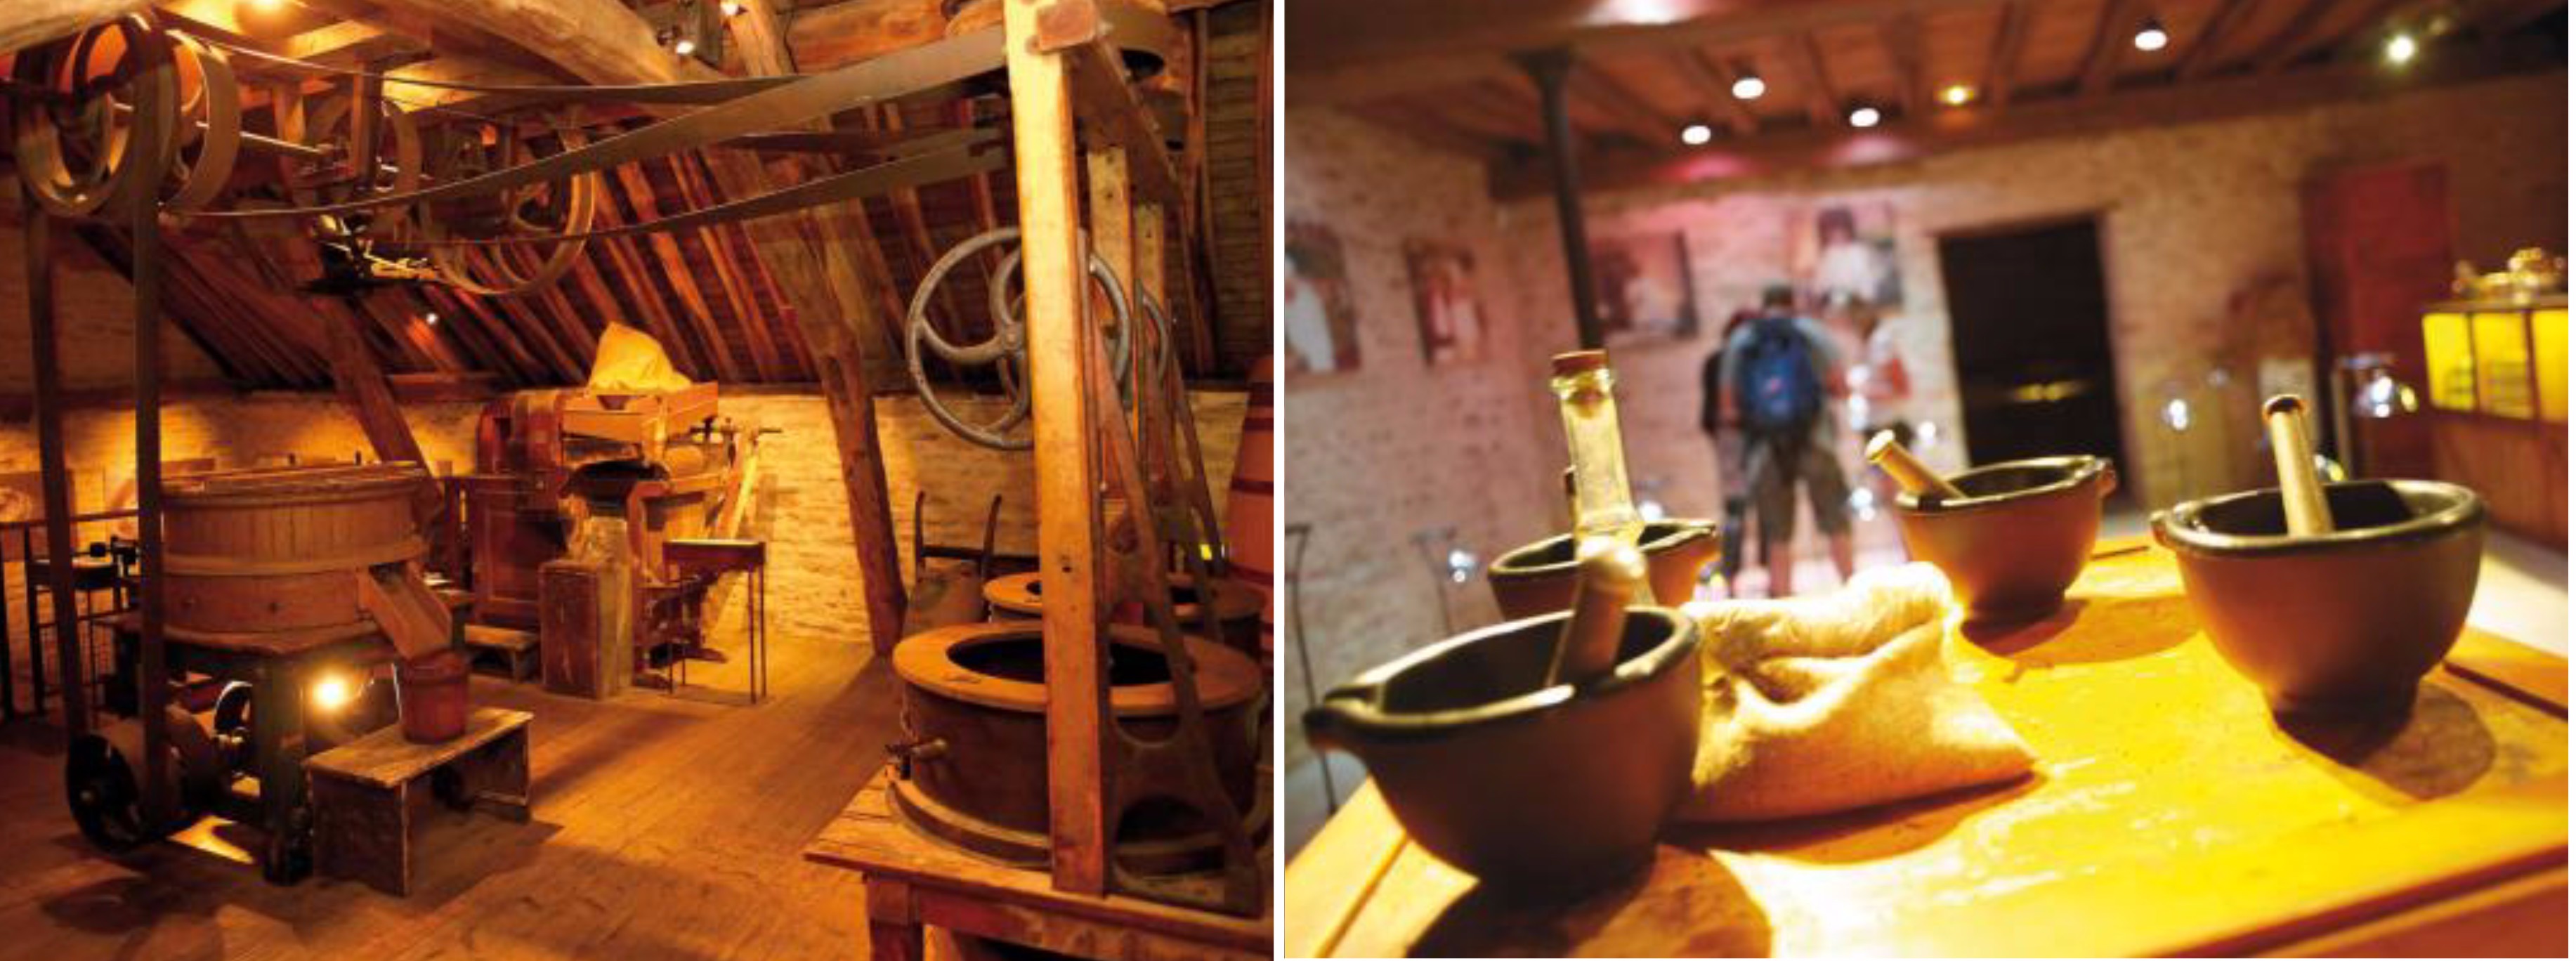 ดิจง – ตลาดเช้า Les Halles – โบน – โอเตล เดอ โบน – พิพิธภัณฑ์มัสตาร์ดฟาลโลต์ –	ไวน์ชาโตว์ของปมมาร์ – ชิมไวน์ – ดิจง - 2